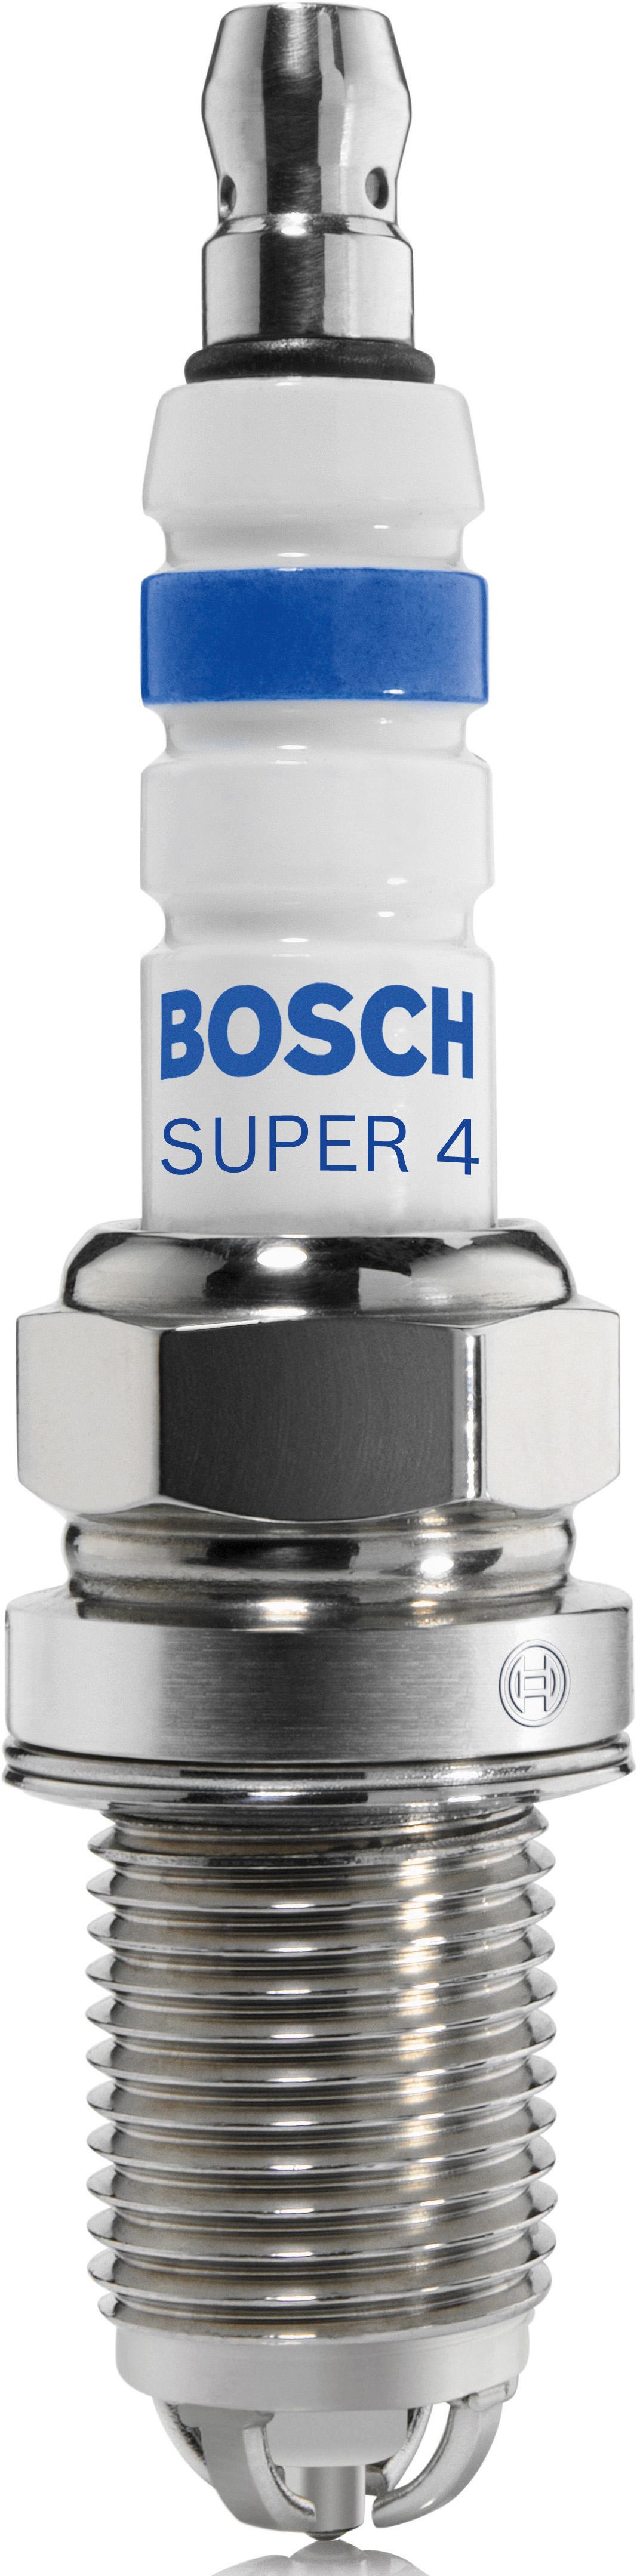 Fr91X Bosch Super 4 Spark Plug X4